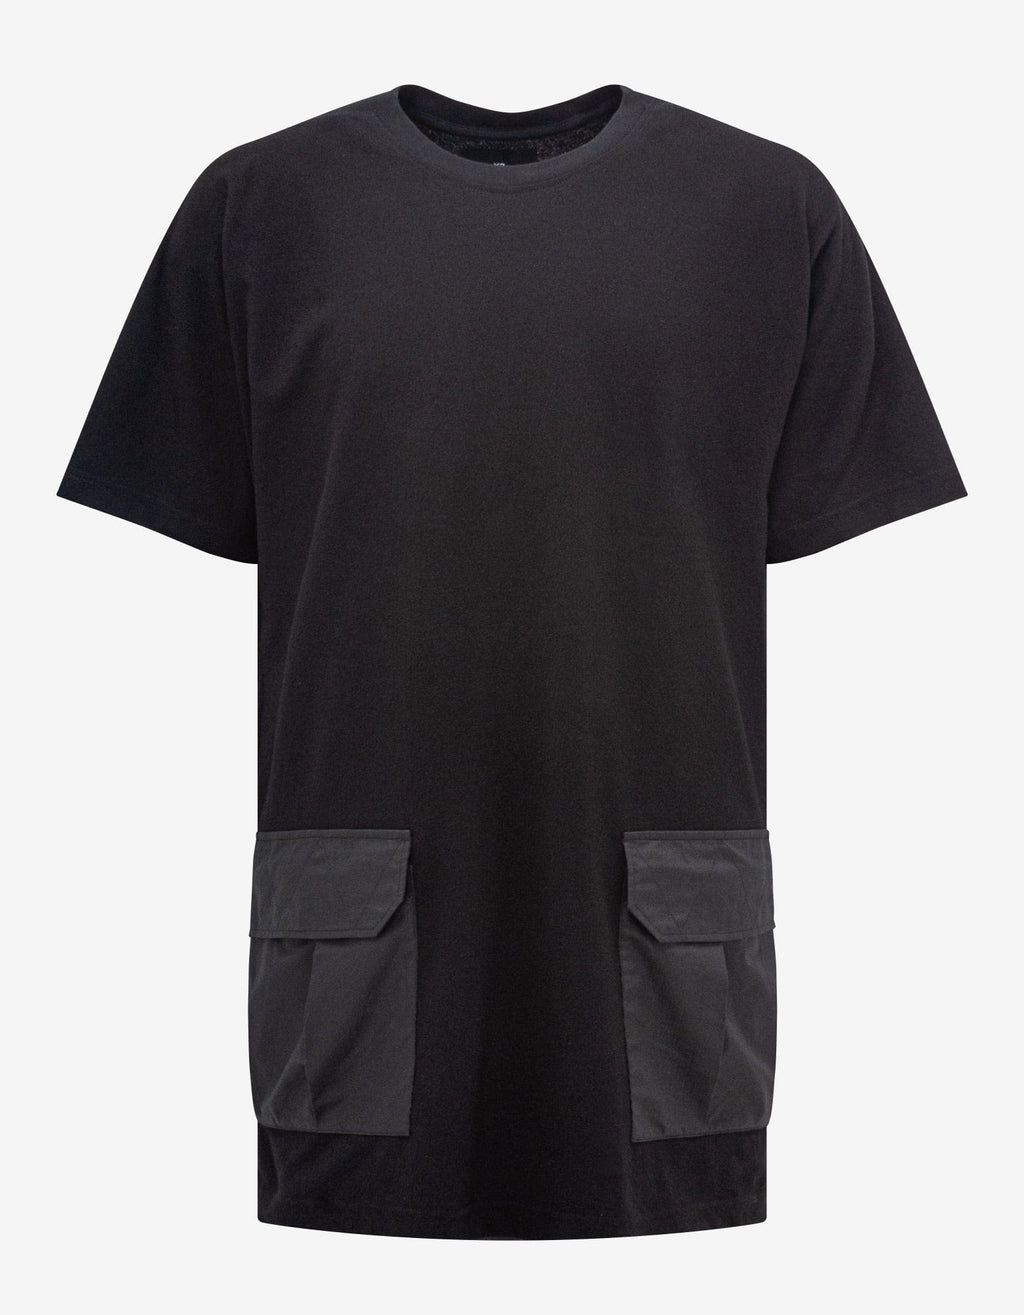 Y-3 Y-3 Black Crepe Jersey Pocket T-Shirt